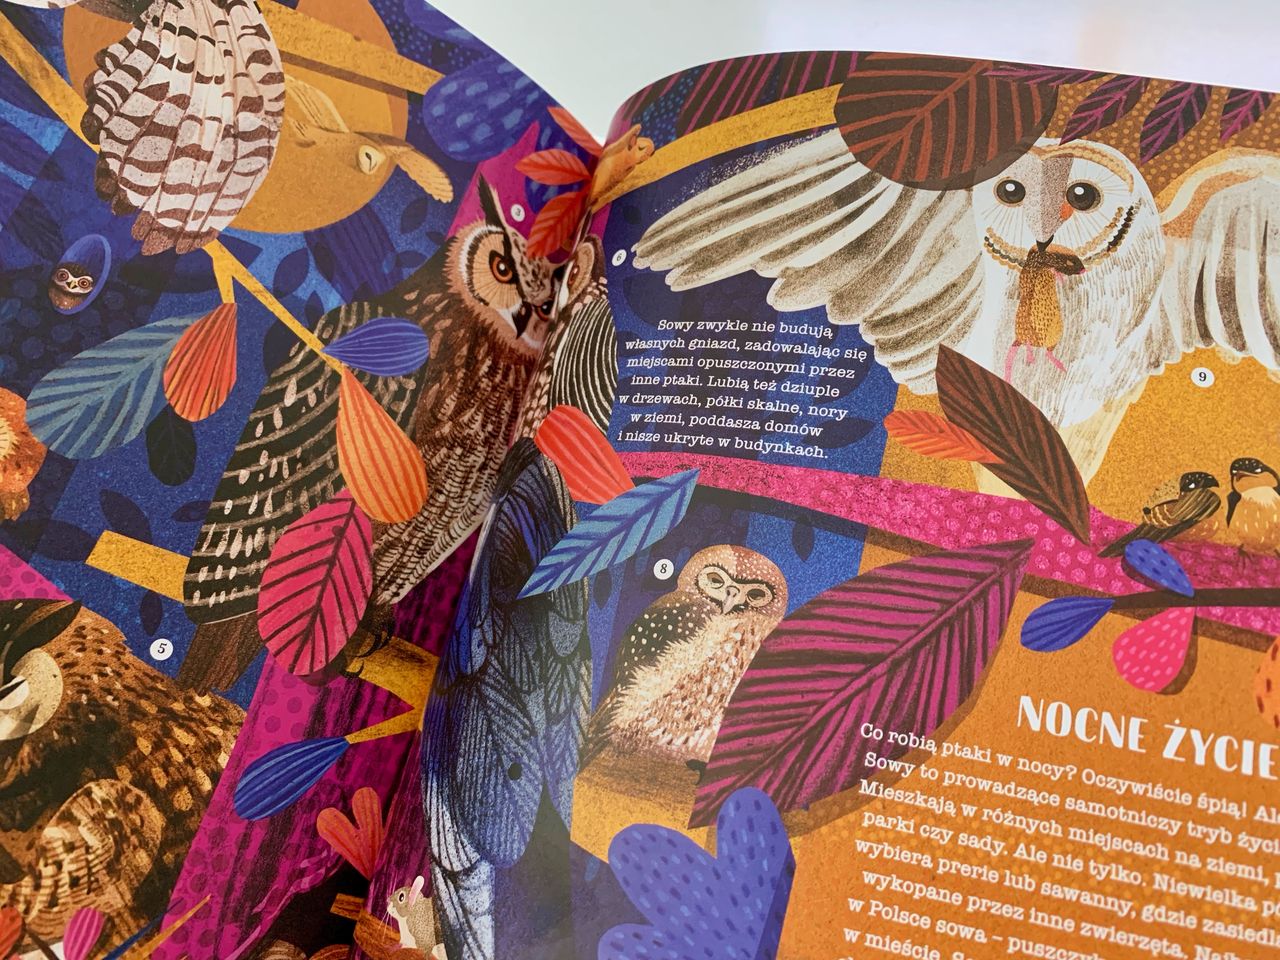 Ptasie opowieści – 2 tytuły dla pasjonatów ornitologii